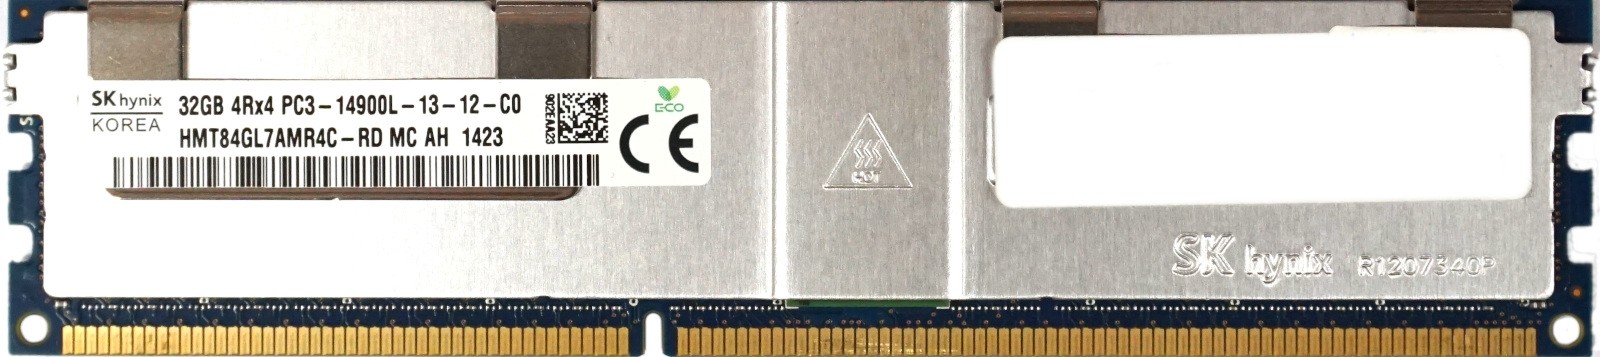 Hynix - 32GB PC3-14900L (DDR3-1866Mhz, 4RX4)